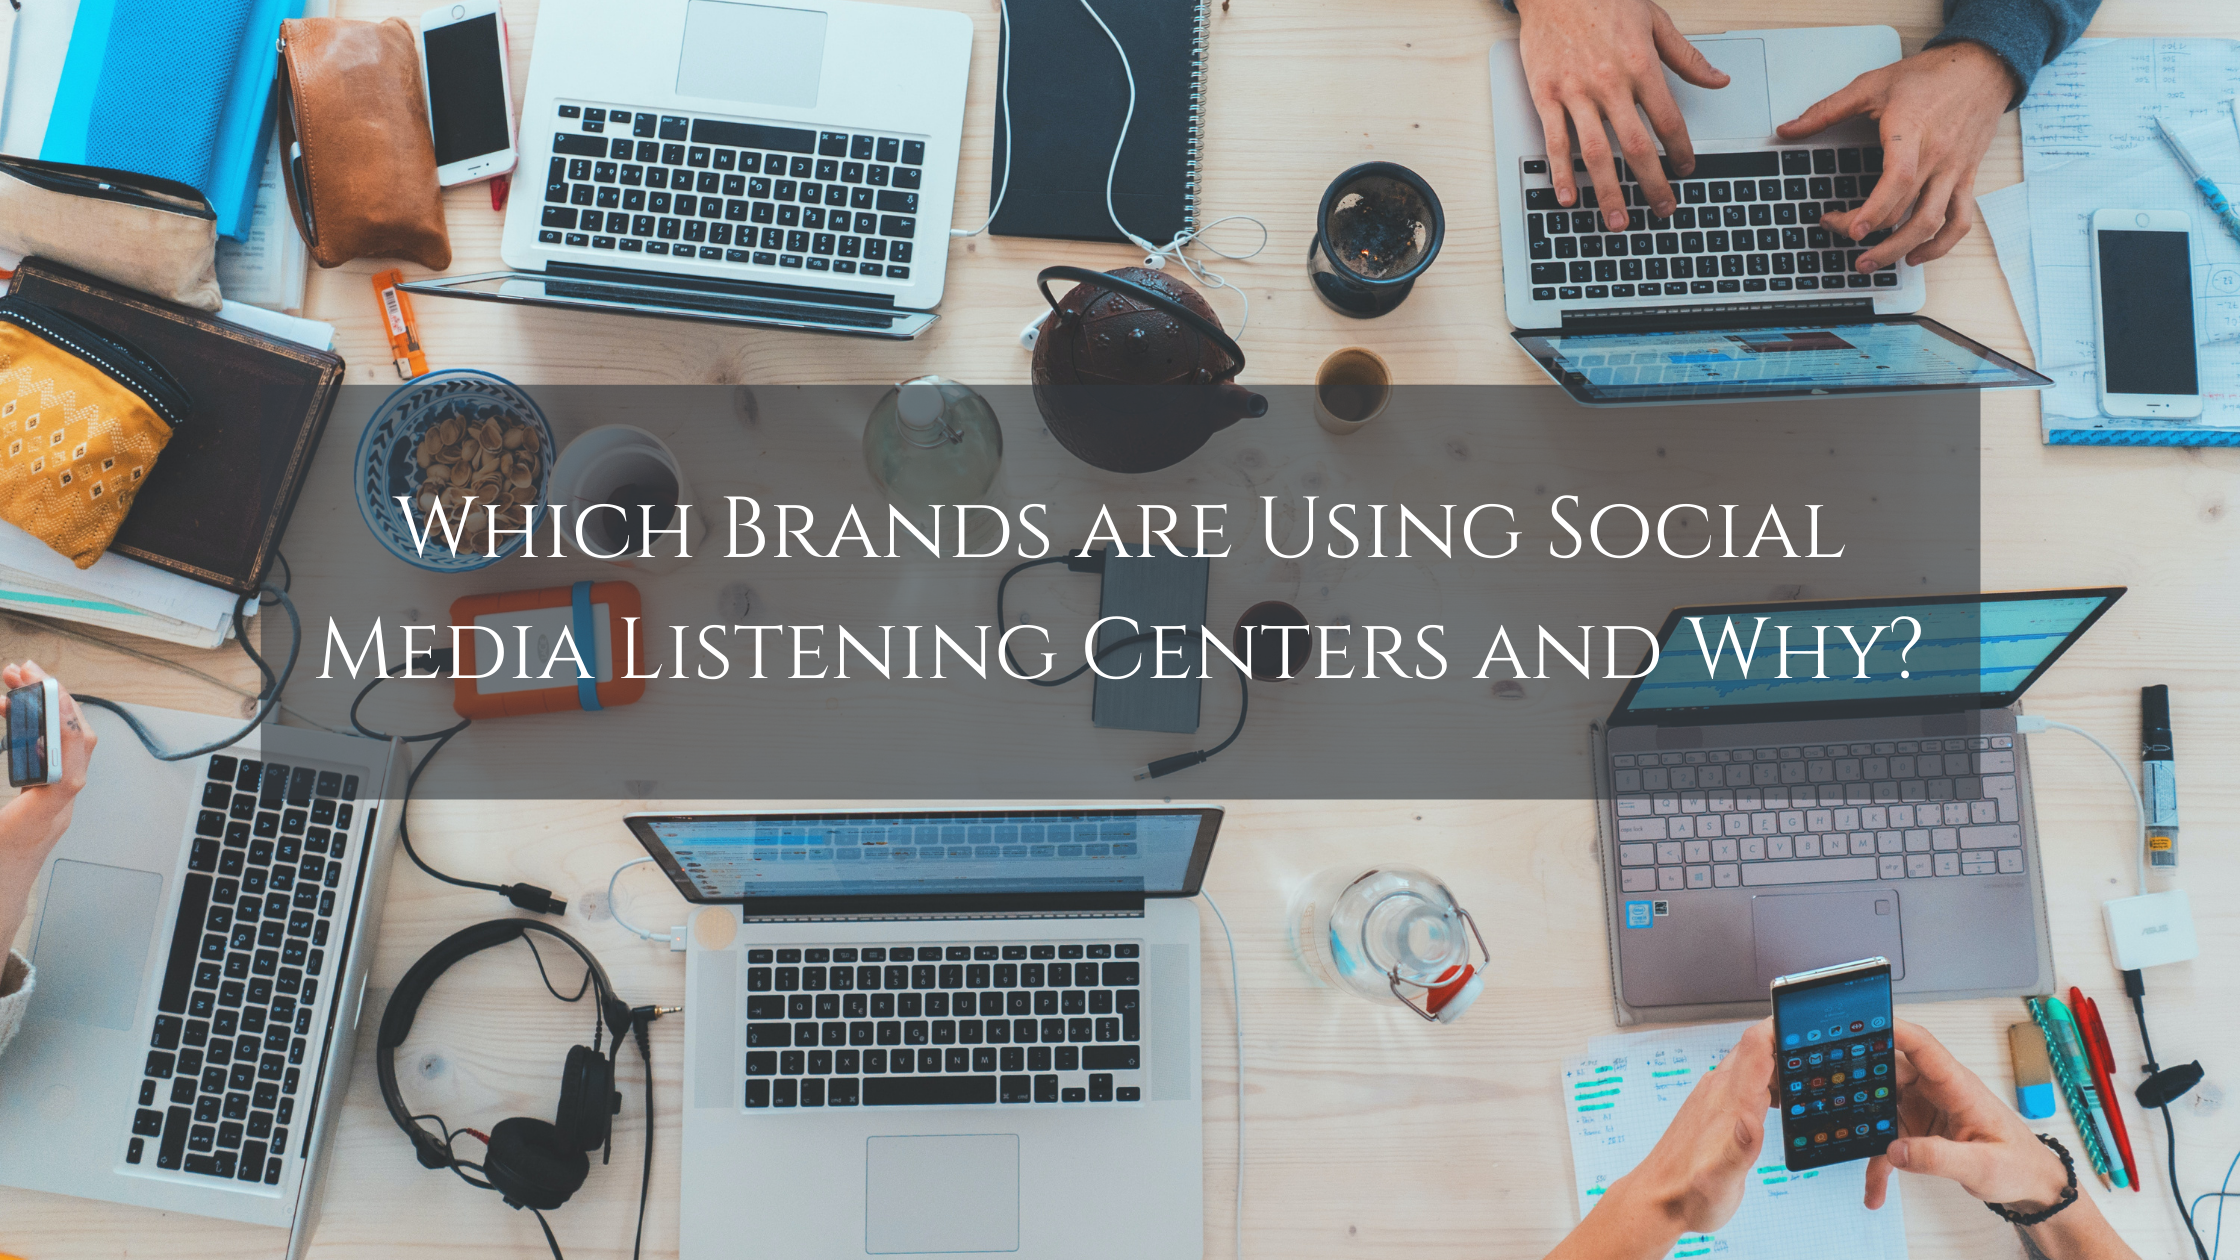 Using Social Media Listening Centers